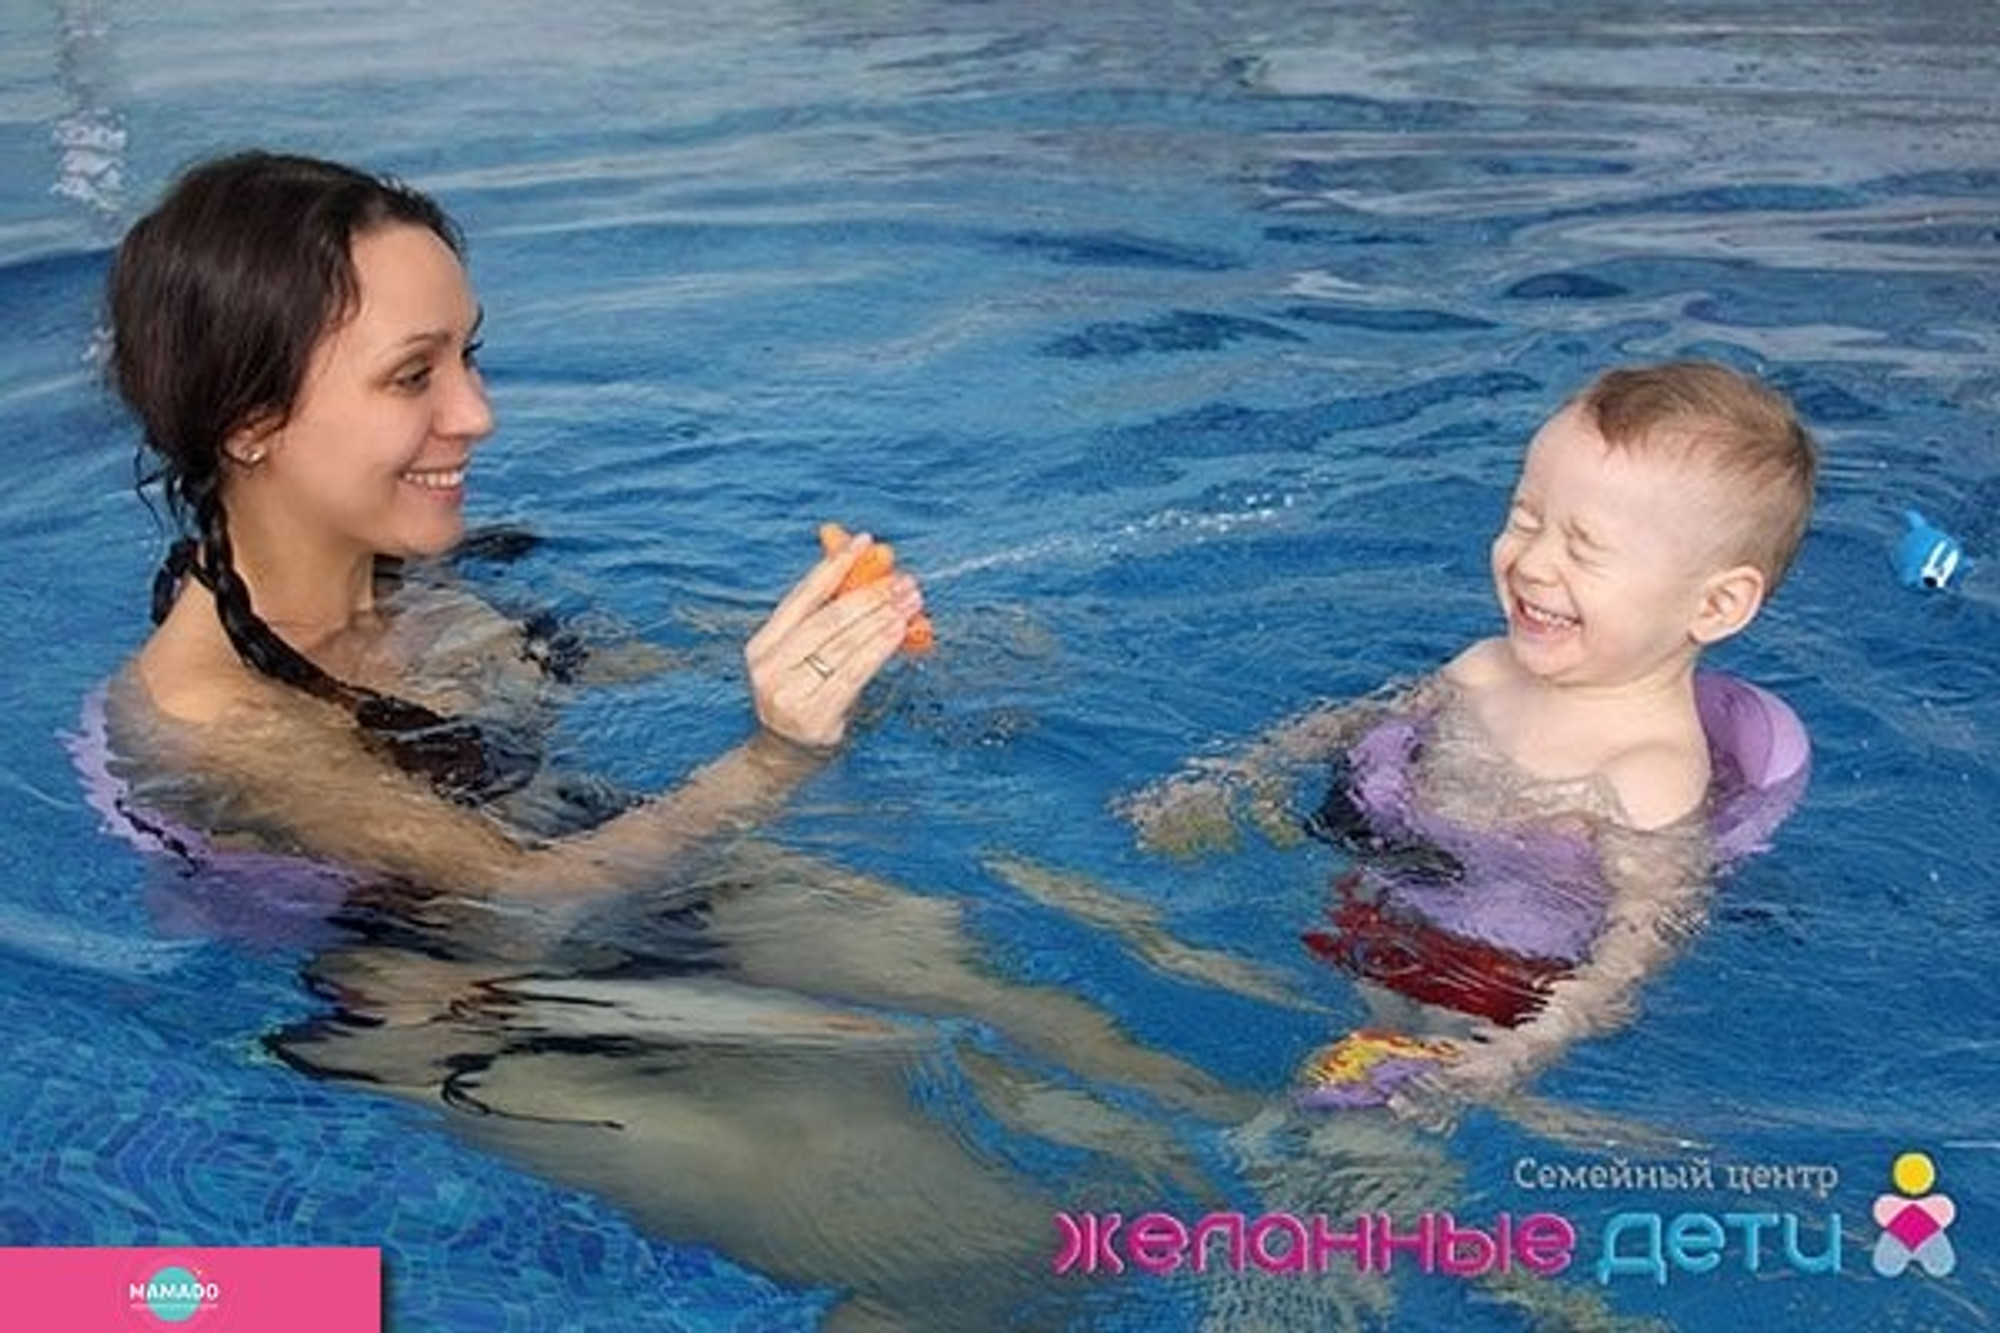 "Желанные дети", семейный центр, подготовка к родам, раннее развитие, плавание для малышей, Казань 